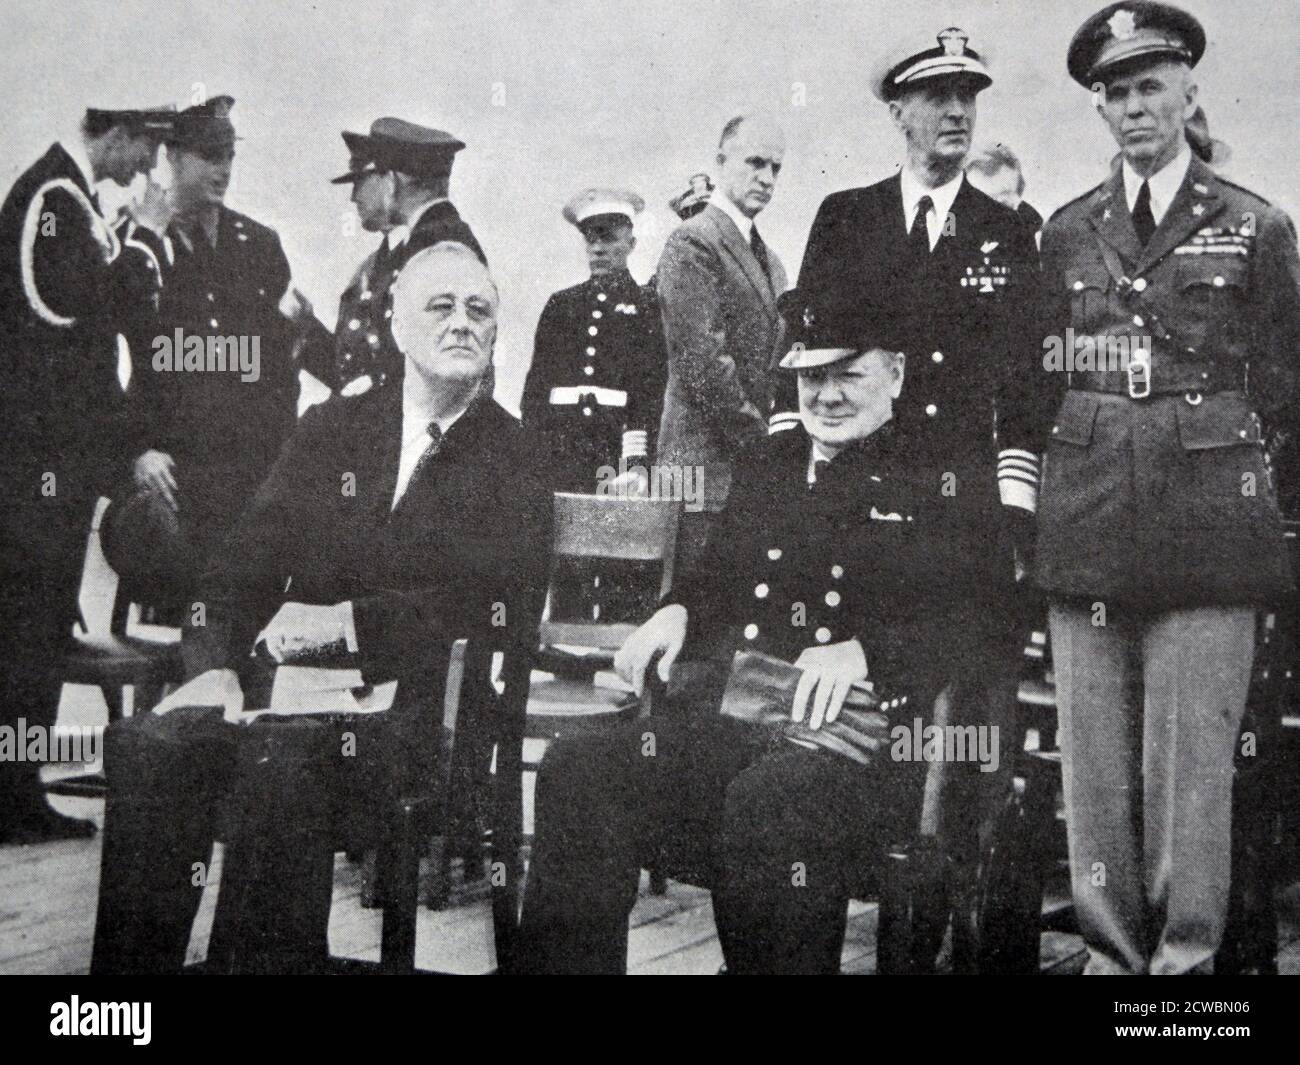 Schwarz-Weiß-Fotografie des Zweiten Weltkriegs (1939-1945); ein Treffen zwischen US-Präsident Franklin D. Roosevelt (1882-1945) und dem britischen Premierminister Sir Winston Churchill (1874-1965) auf einem Schiff auf See. Sie legen die Charta des Atlantiks fest, 14. August 1941. Stockfoto